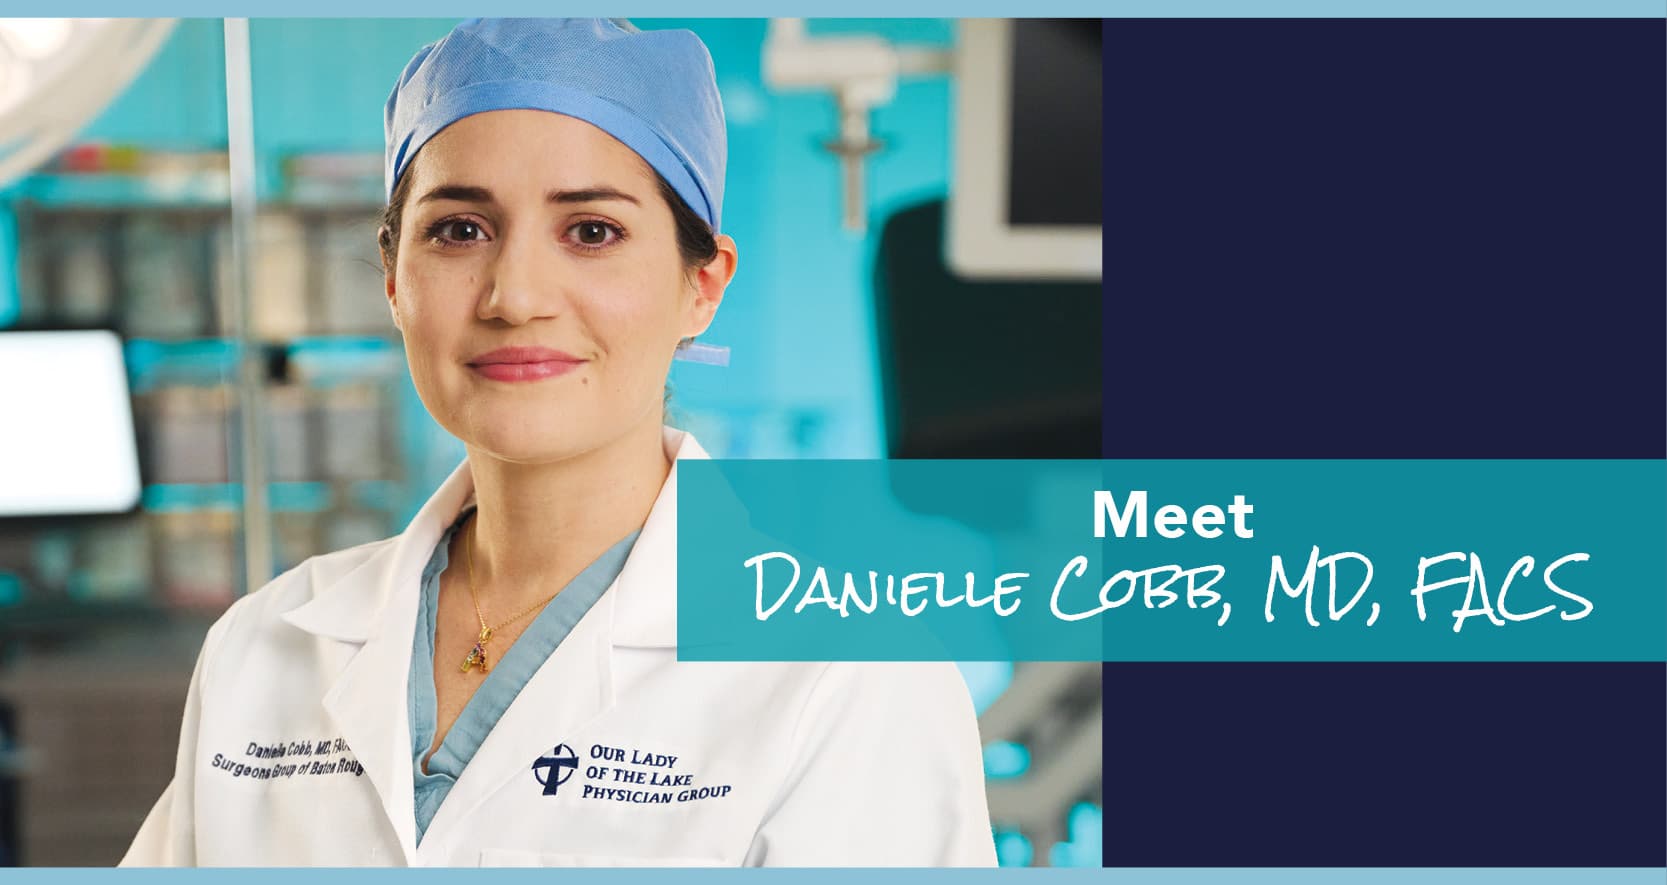 Dr. Danielle Cobb